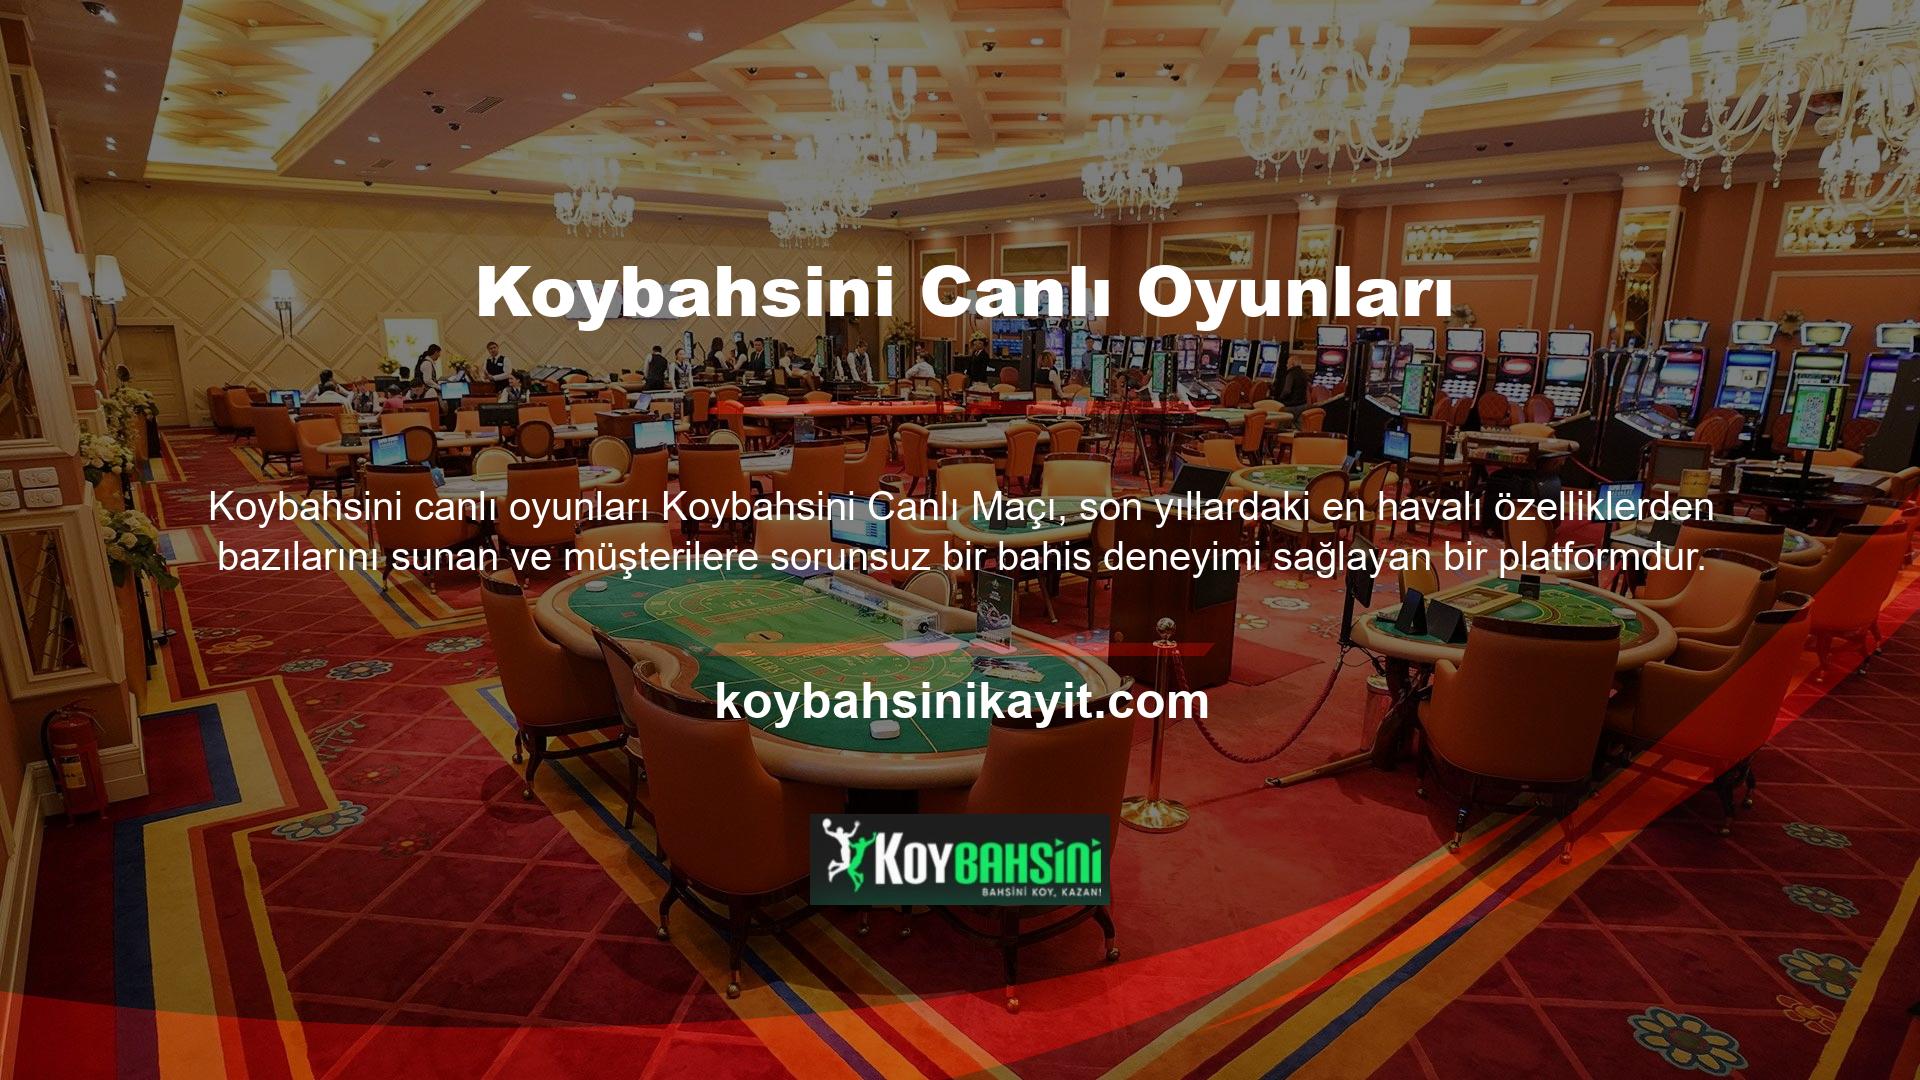 Koybahsini Casino, resmi web sitesinde canlı spor, canlı casino ve diğer oyunlara erişim sunmaktadır